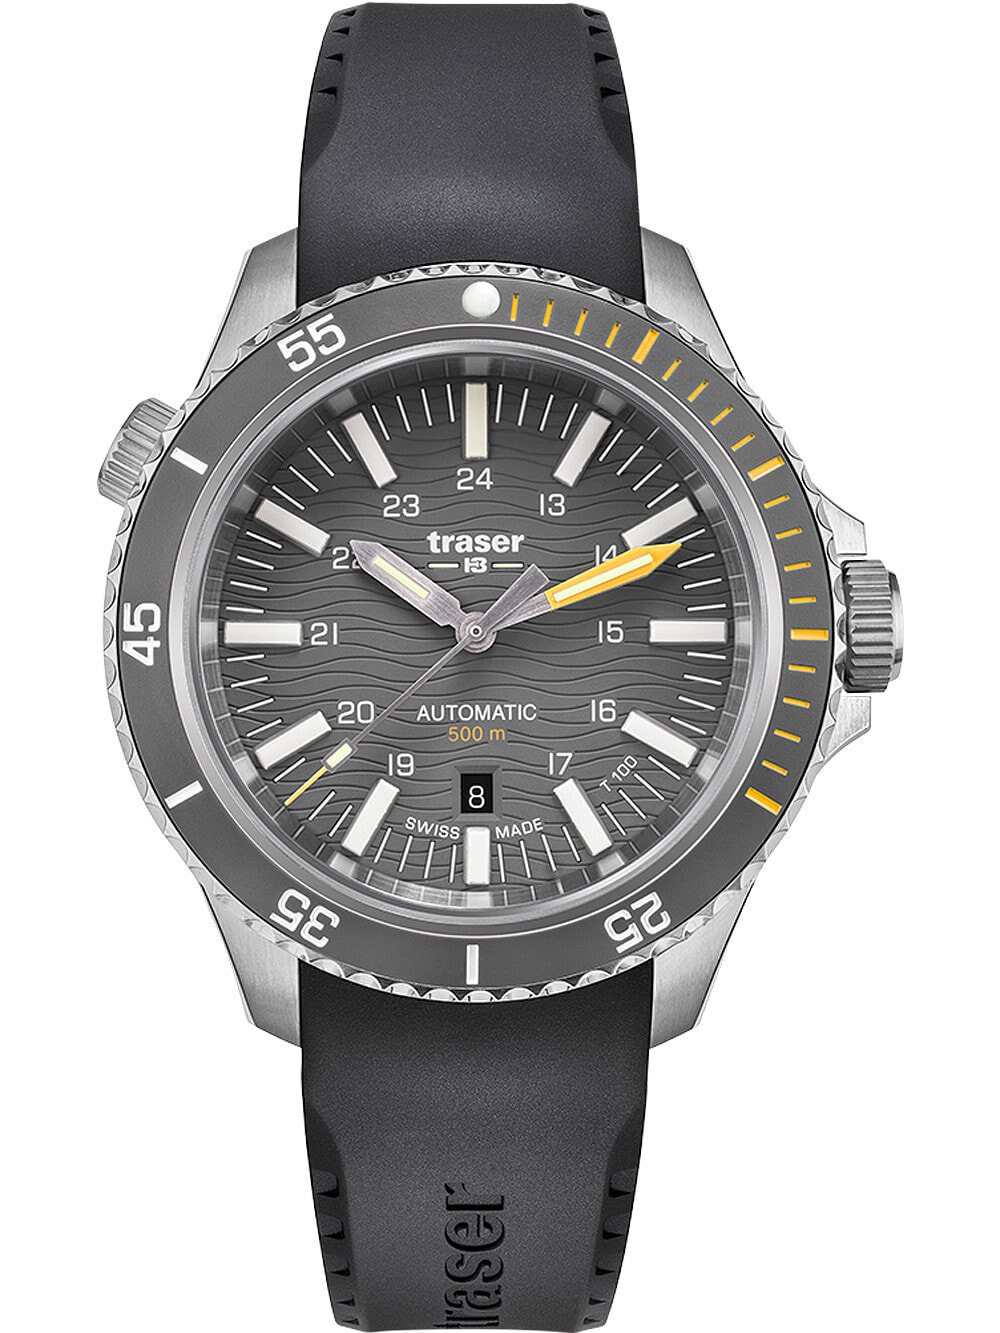 Мужские наручные часы с черным силиконовым ремешком Traser H3 110330 P67 Diver Automatik T100 Grey 46mm 50ATM